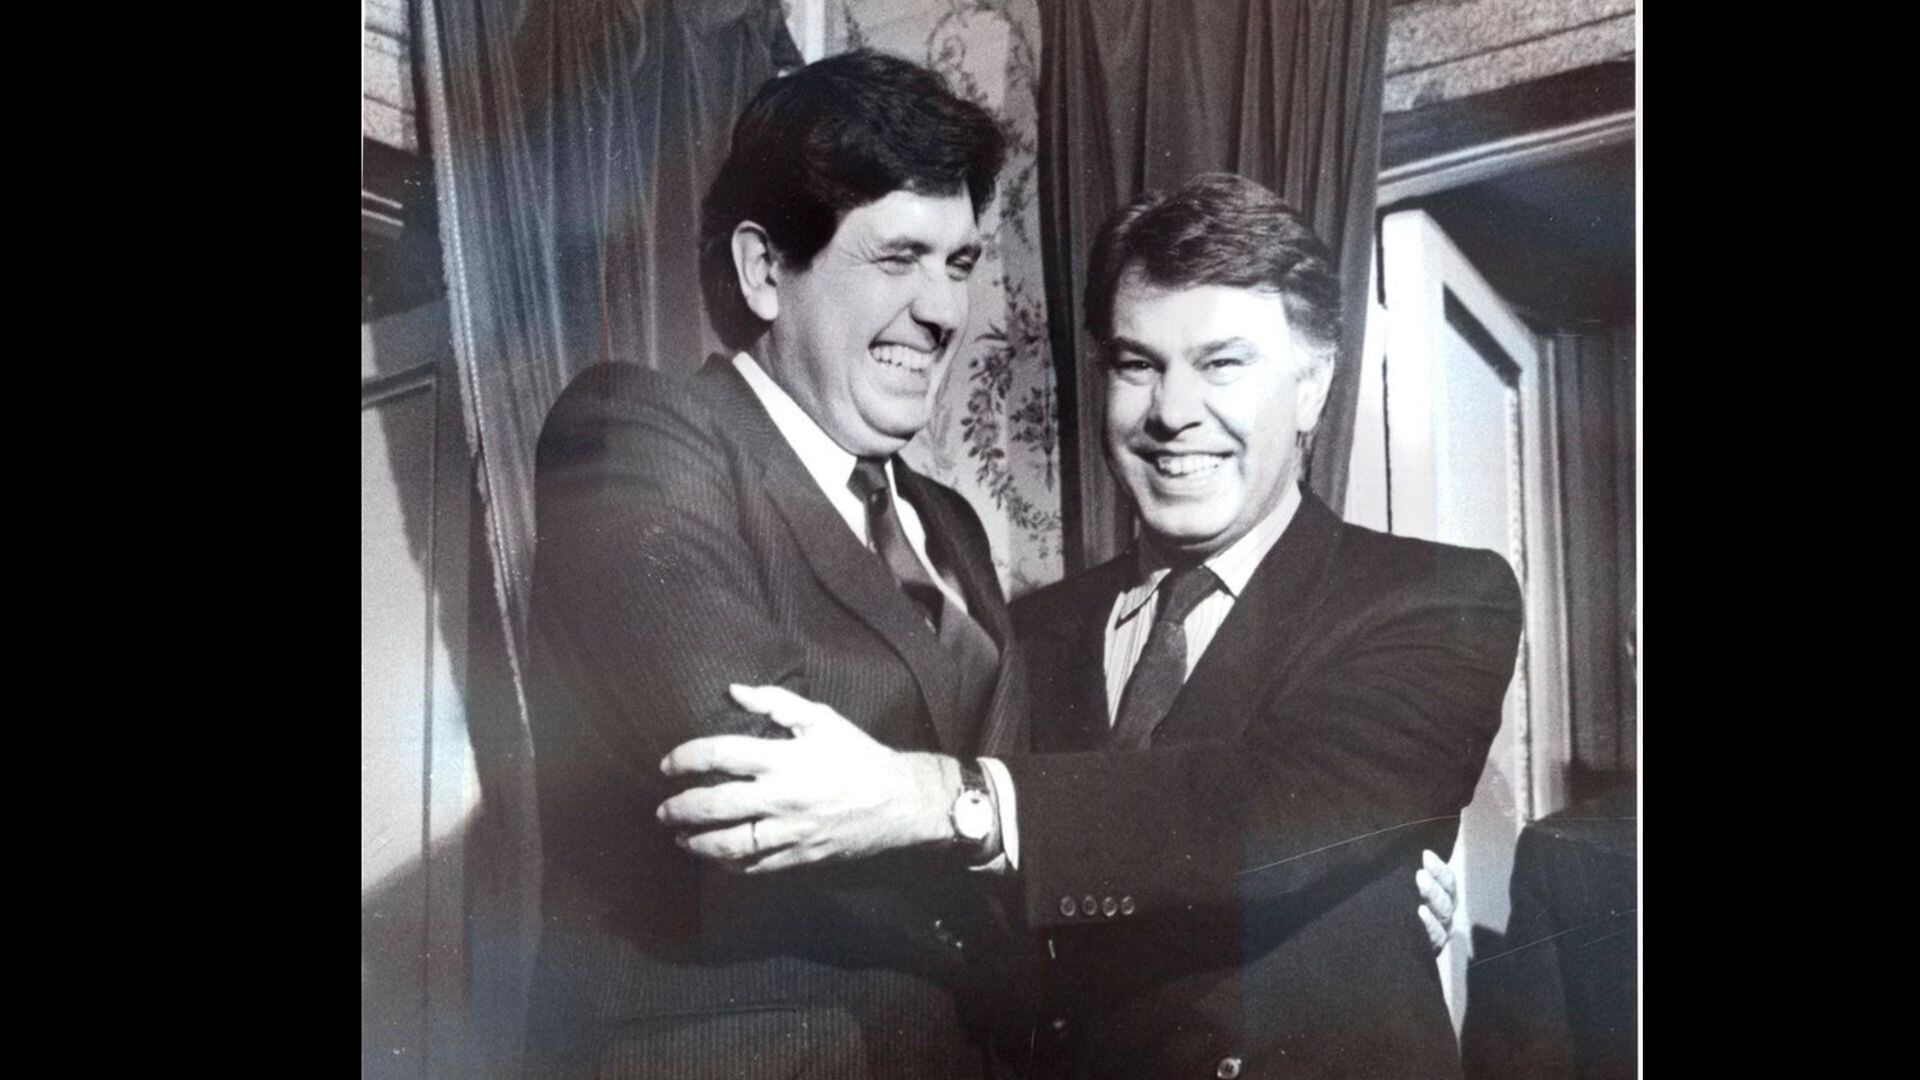 Alan García y Felipe González, entonces presidente del gobierno español, fotografiados en La Moncloa en enero de 1987. (Ministerio de la Presidencia)